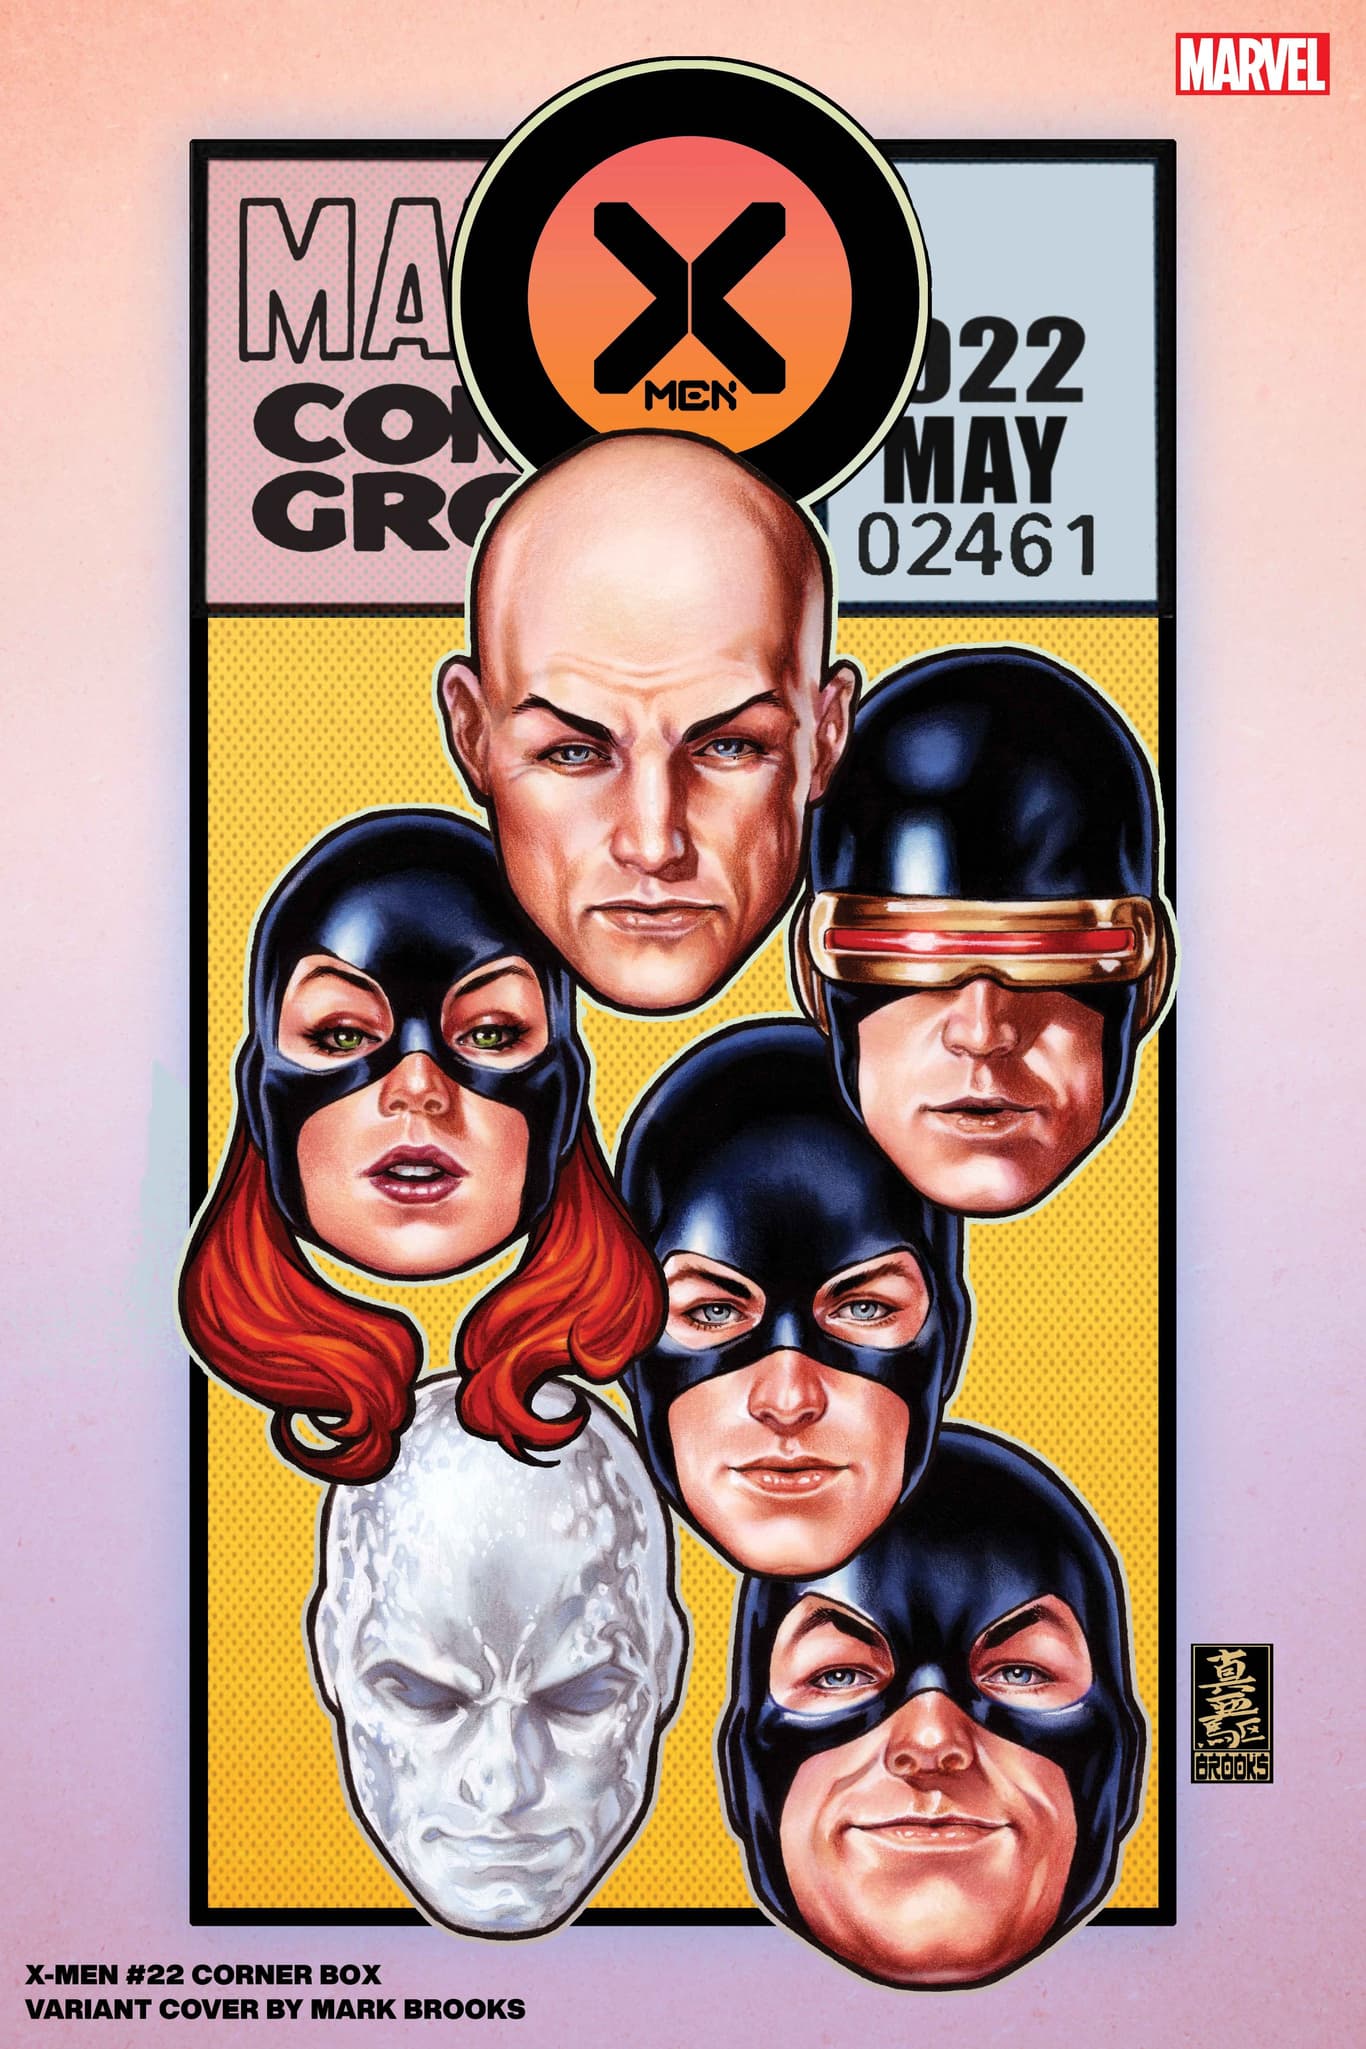 X-MEN #22 Mark Brooks Corner Box Variant Cover